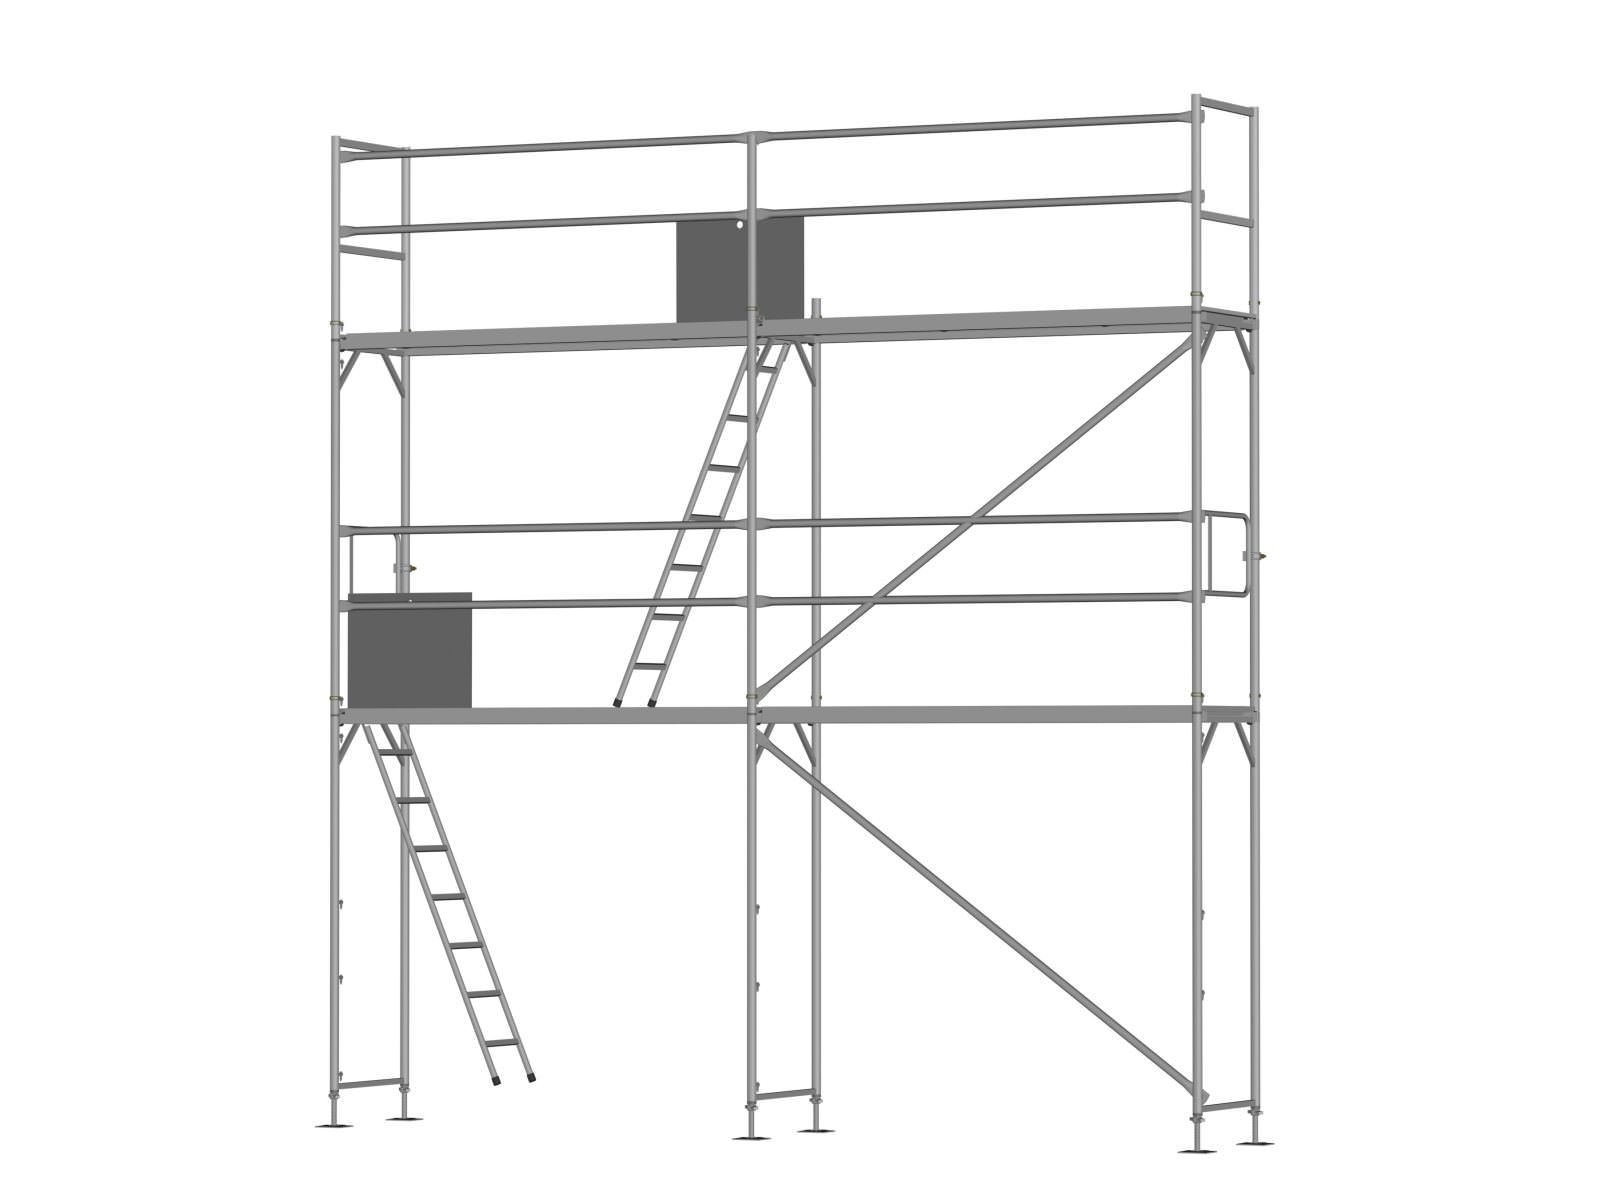 Stahl Traufseitengerüst 30 m² - 2,5 m Felder - 5 m lang - 6 m Arbeitshöhe - Basis-Gerüst inkl. Aufstieg & Befestigung